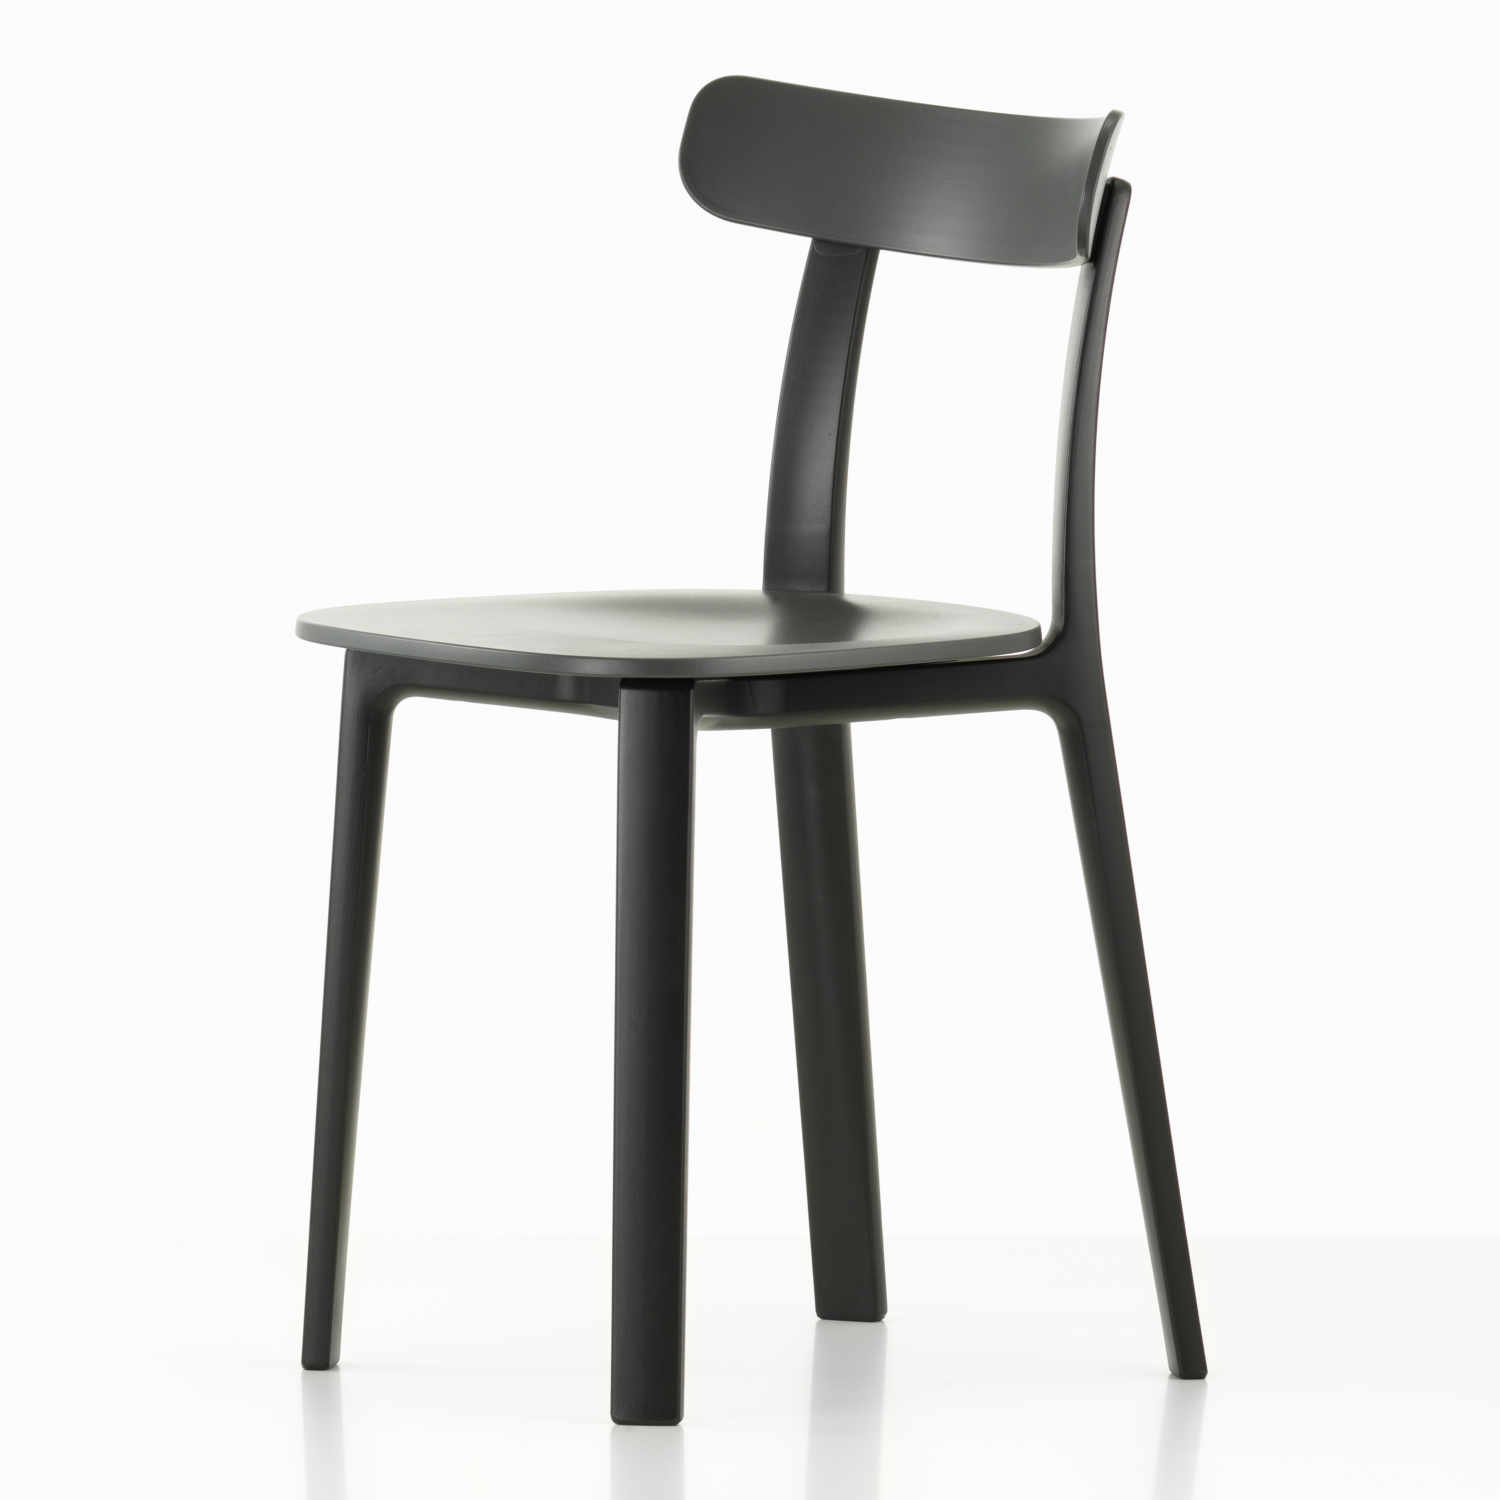 All Plastic Chair, Farbe graphitgrau - two tone, Gleiter gleiter für teppichböden von Vitra